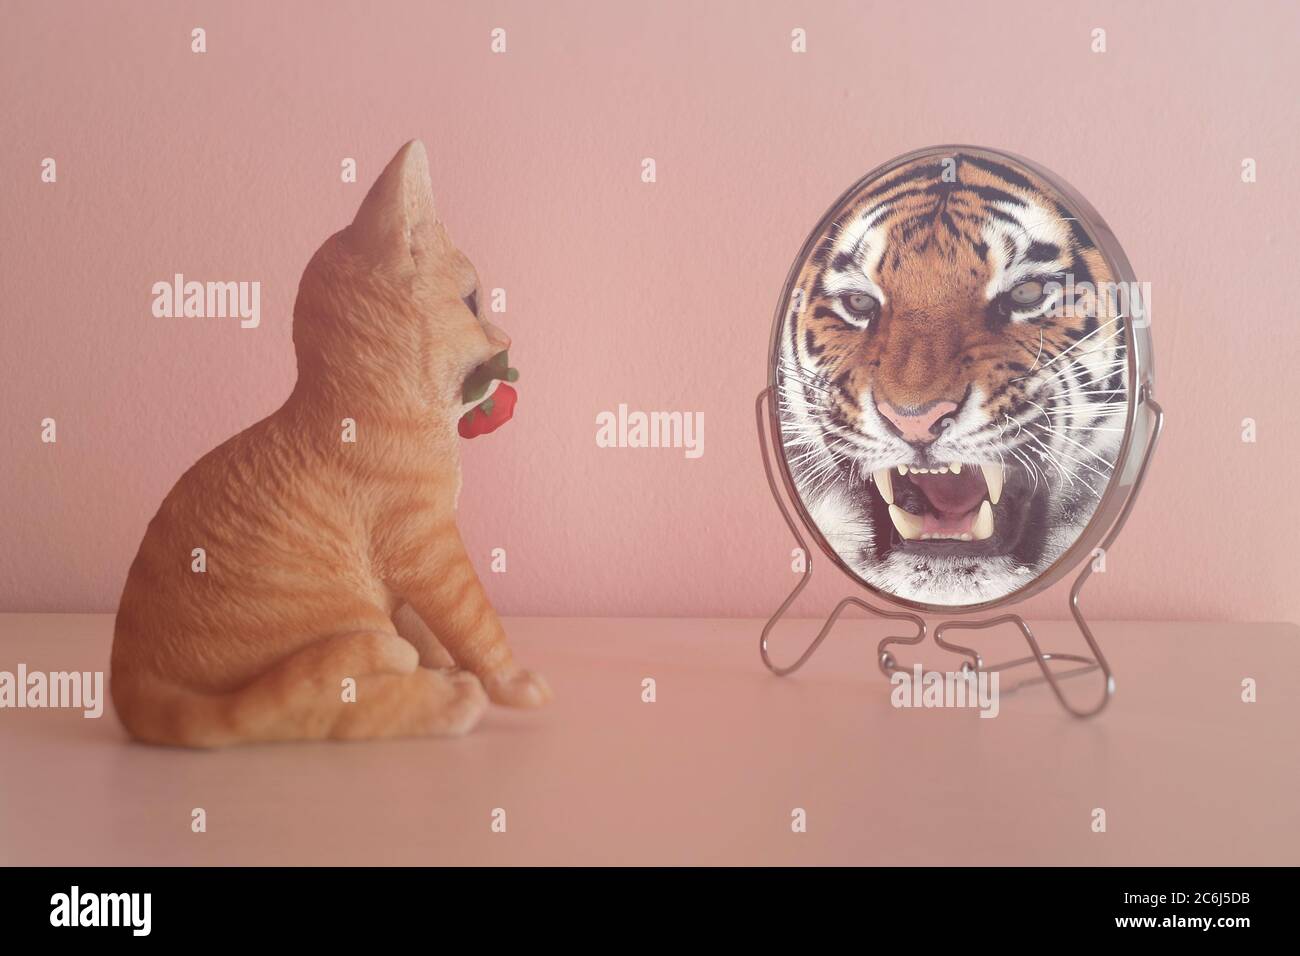 Kätzchen schaut in den Spiegel und sieht sich wie ein Tiger reflektiert. Selbstvertrauen-Konzept. Geschäftliches oder persönliches Wachstum. Stockfoto